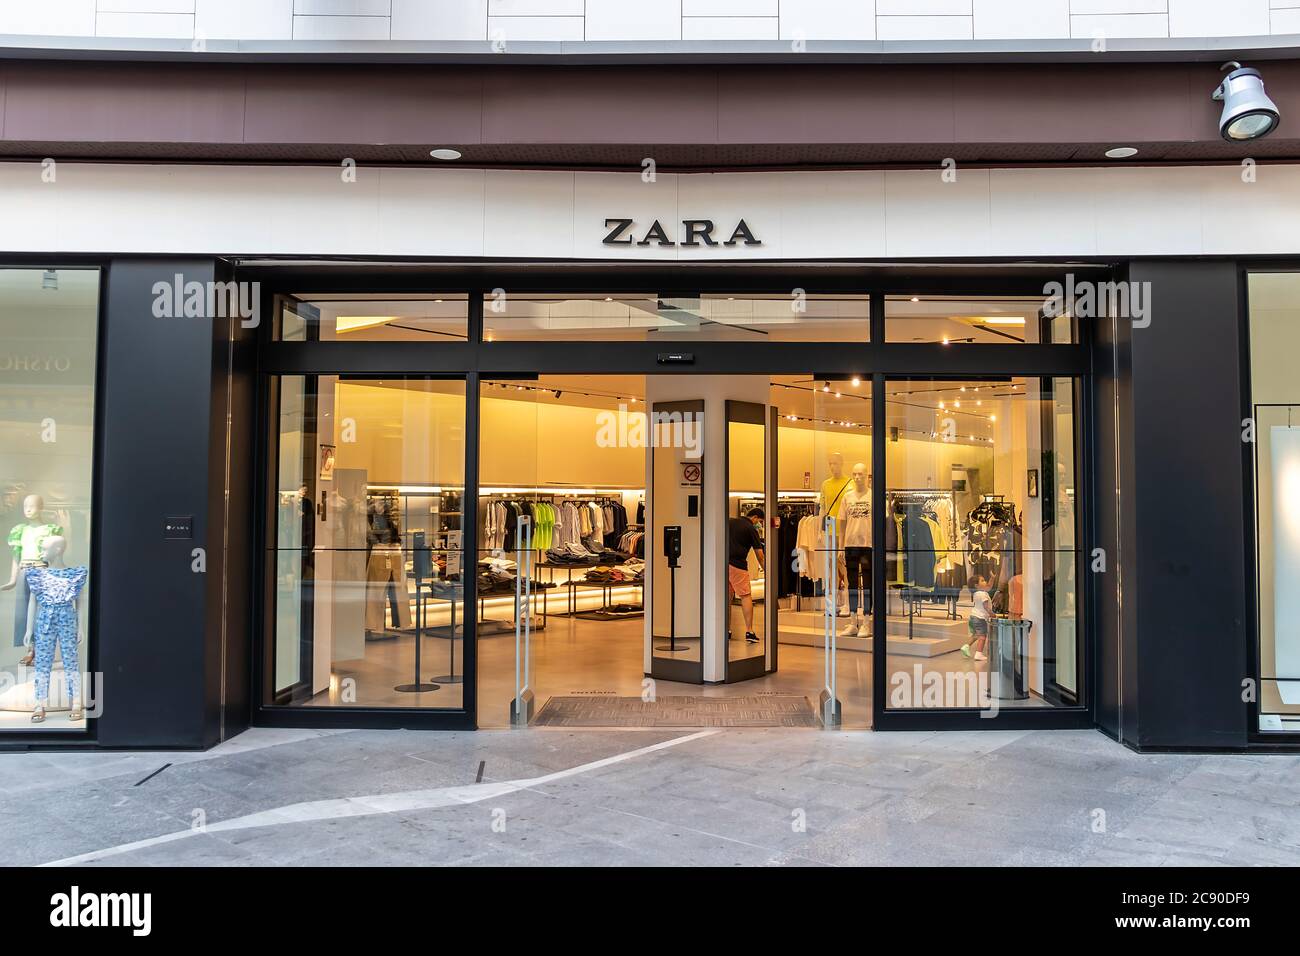 Huelva, Spanien - 27. Juli 2020: Außenansicht von ZARA. Ein spanischer  Bekleidungshändler mit Sitz in Galicien. Das Unternehmen ist spezialisiert  auf schnelle Mode, Kleidung, Zugang Stockfotografie - Alamy